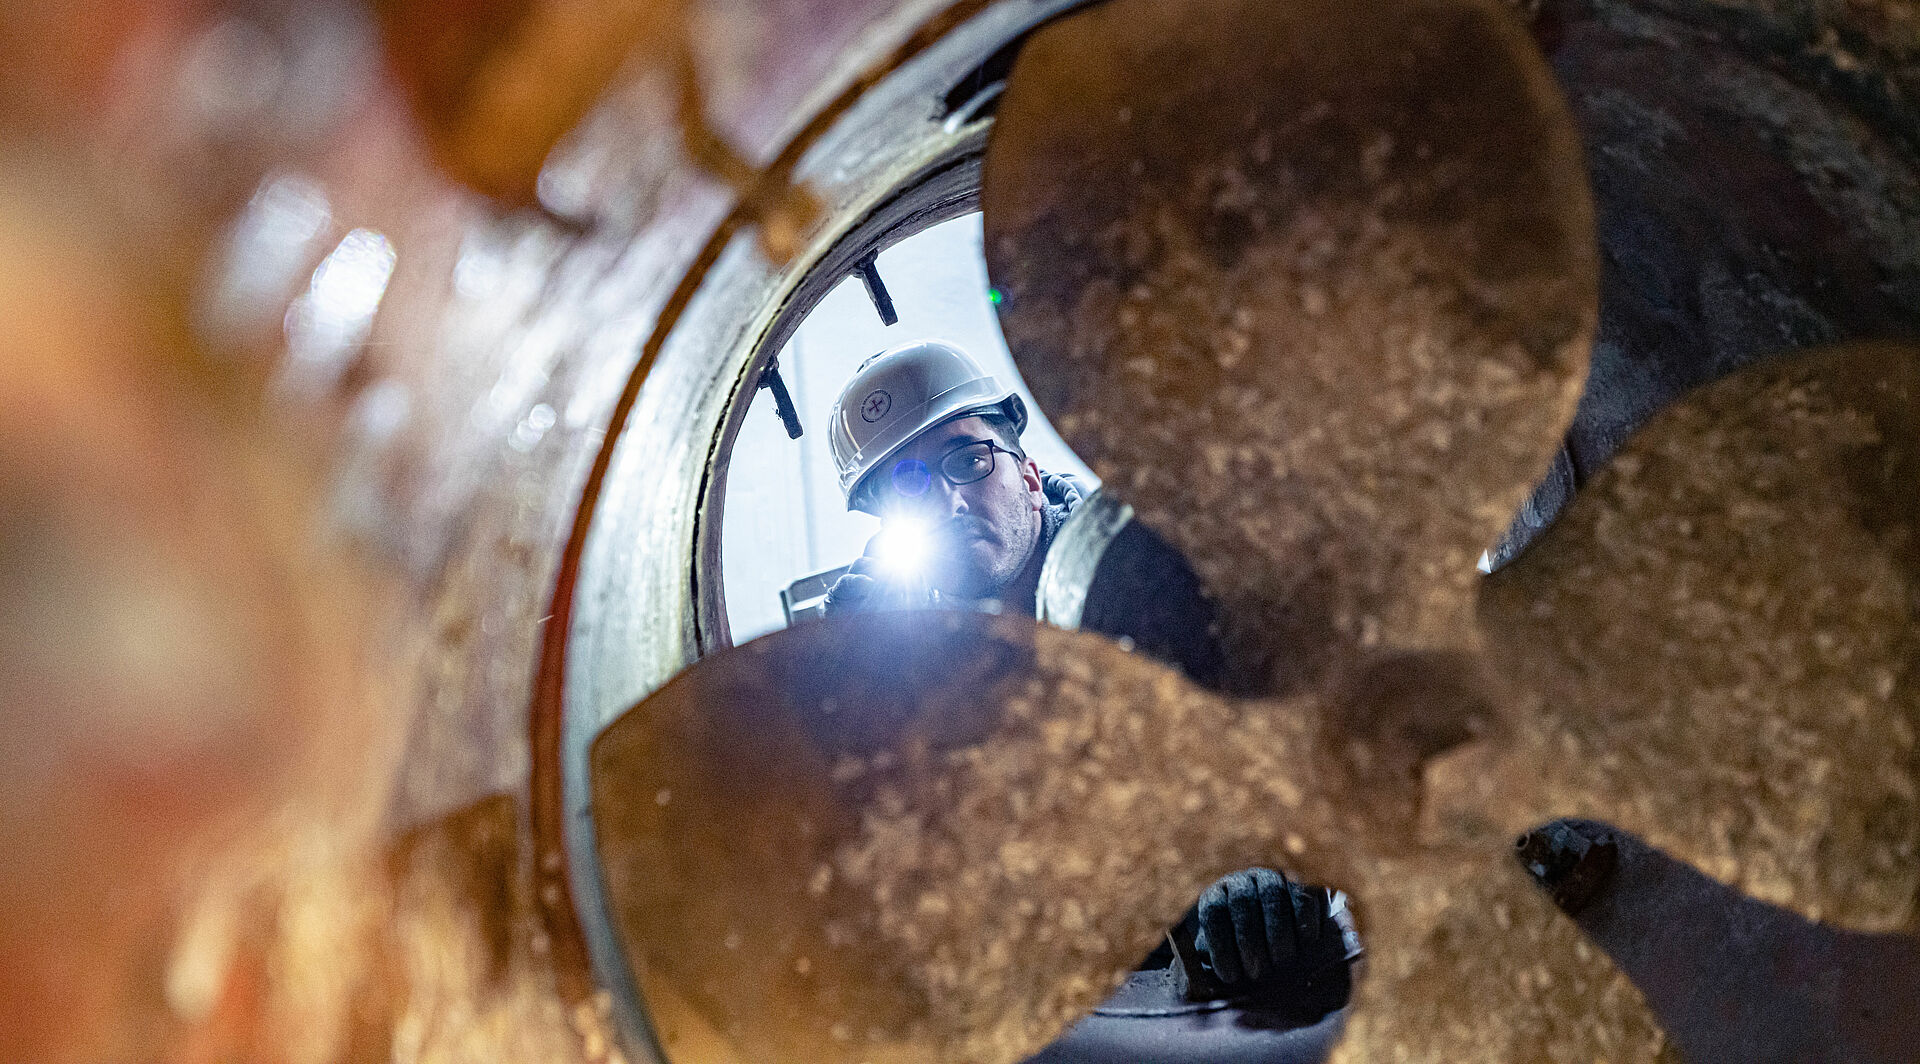 Ein Arbeiter mit Helm leuchtet mit einer Taschenlampe durch die Schraube eines Bugstrahlers im Rumpf eines Seenotrettungskreuzers.